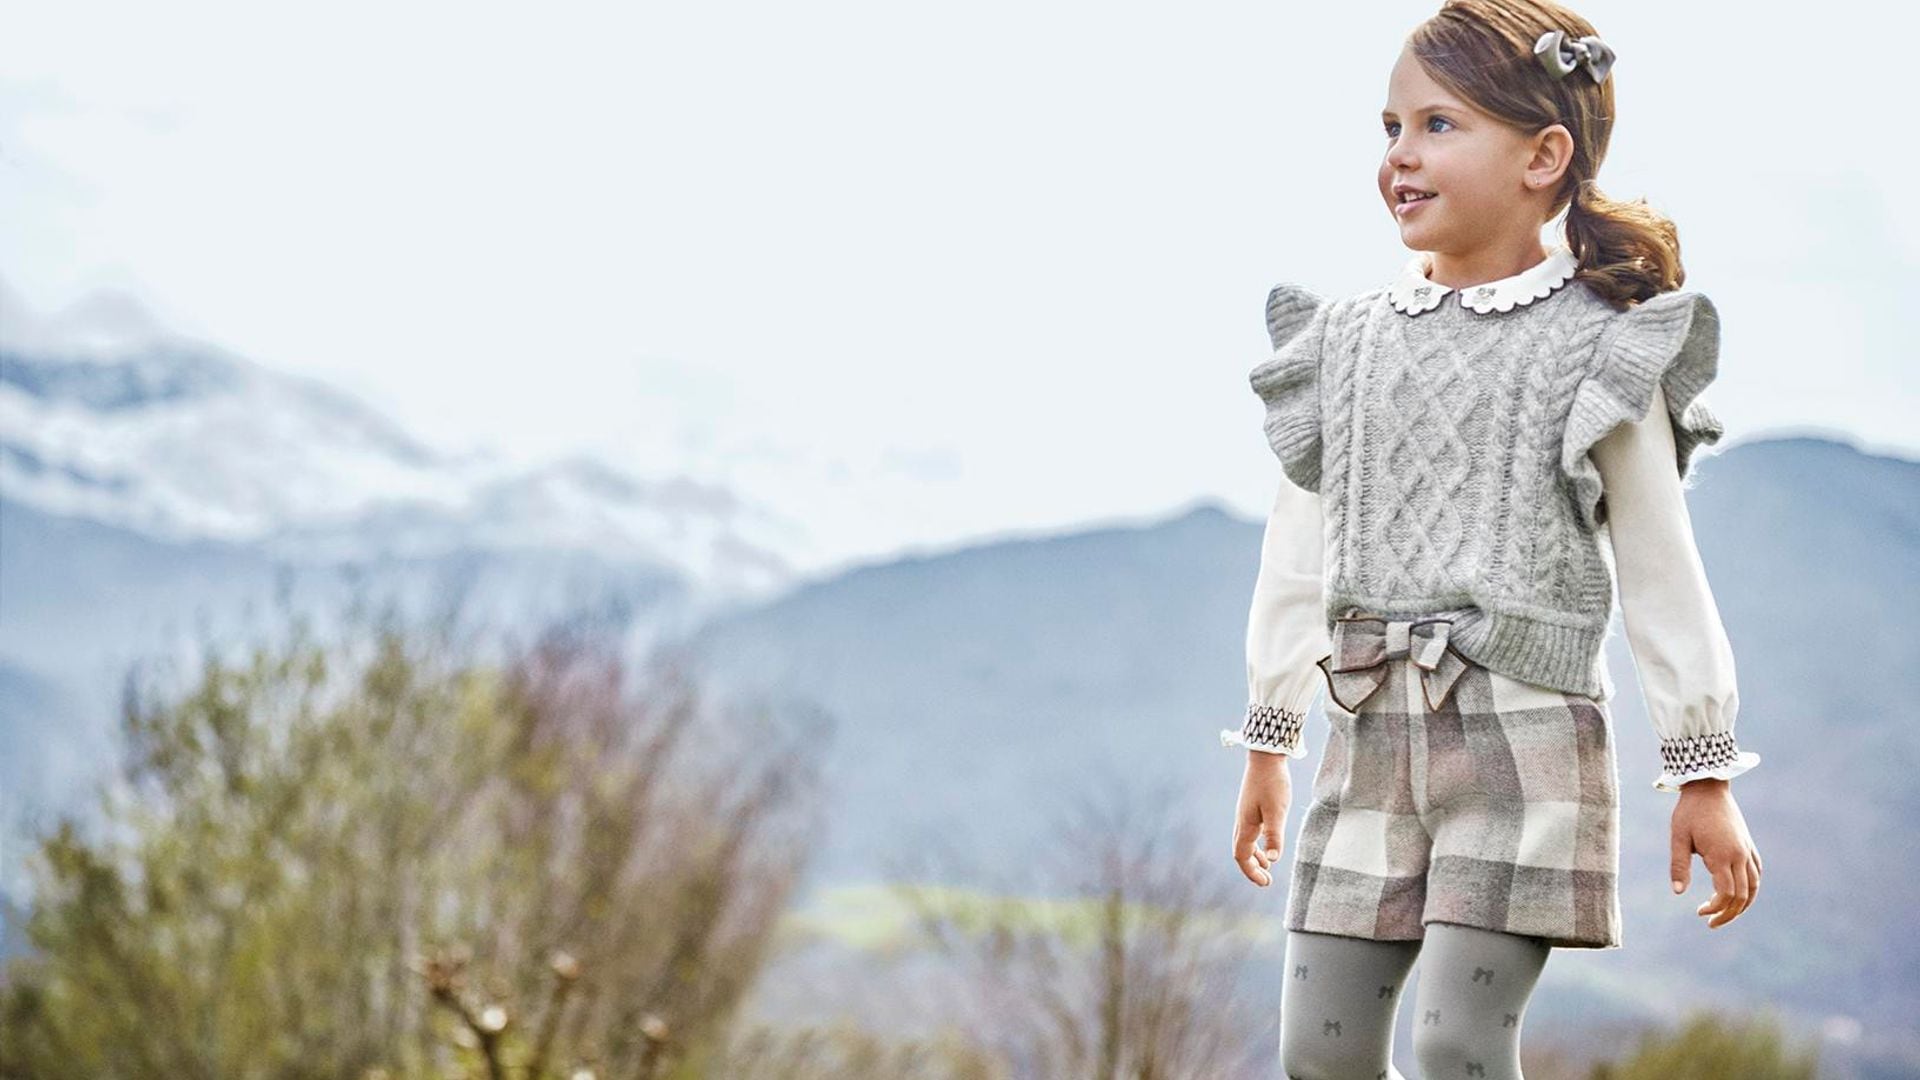 Conoce las tendencias en moda infantil que salvarán el cambio de armario de tus hijos este otoño